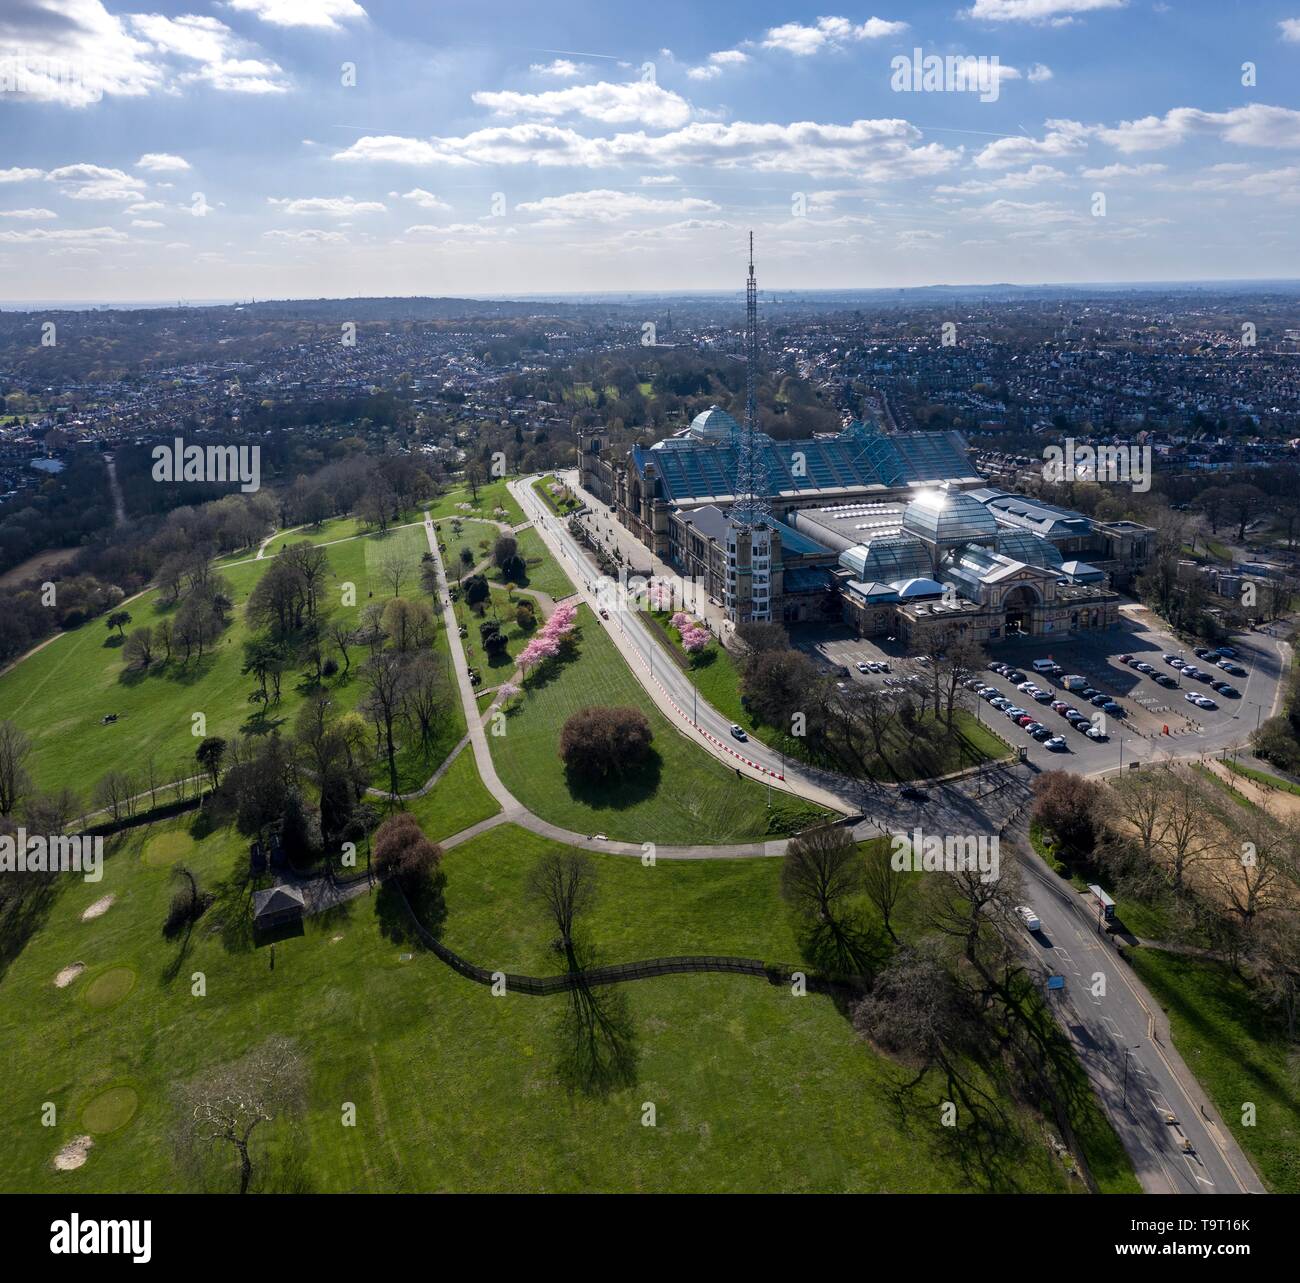 Alexandra Palace, lieu emblématique du nord de Londres, UK Photographie aérienne Banque D'Images